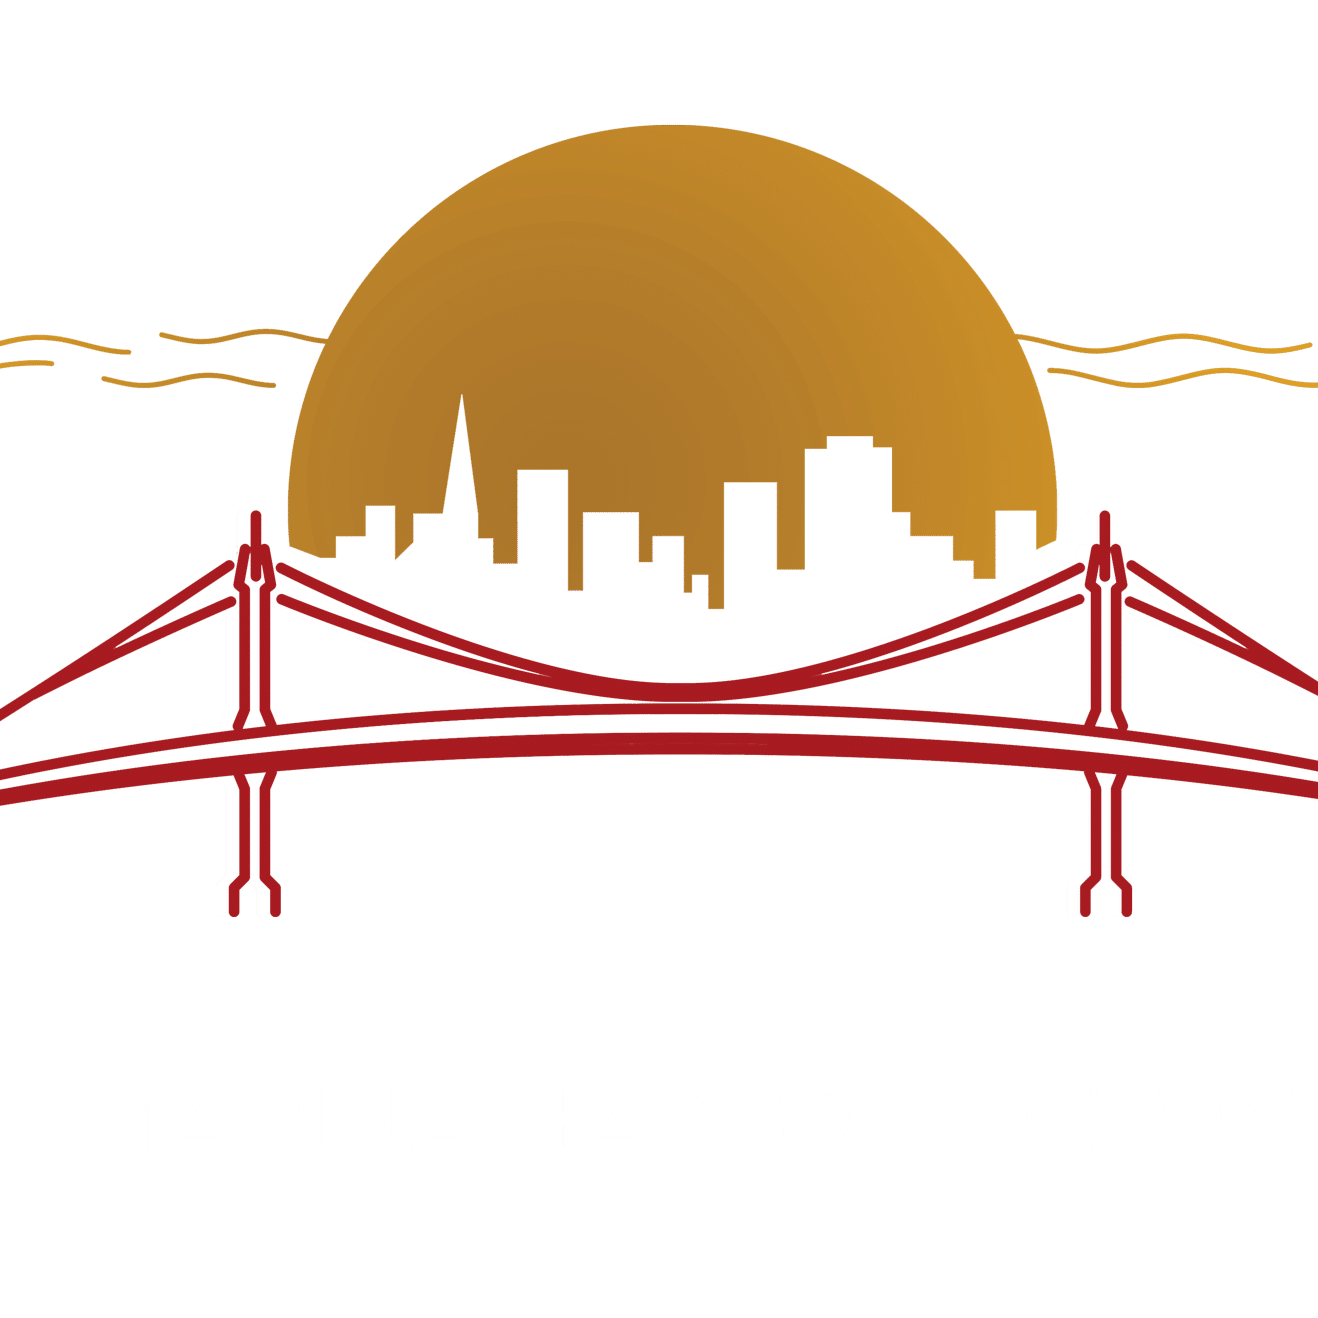 Marina Harbor Detox